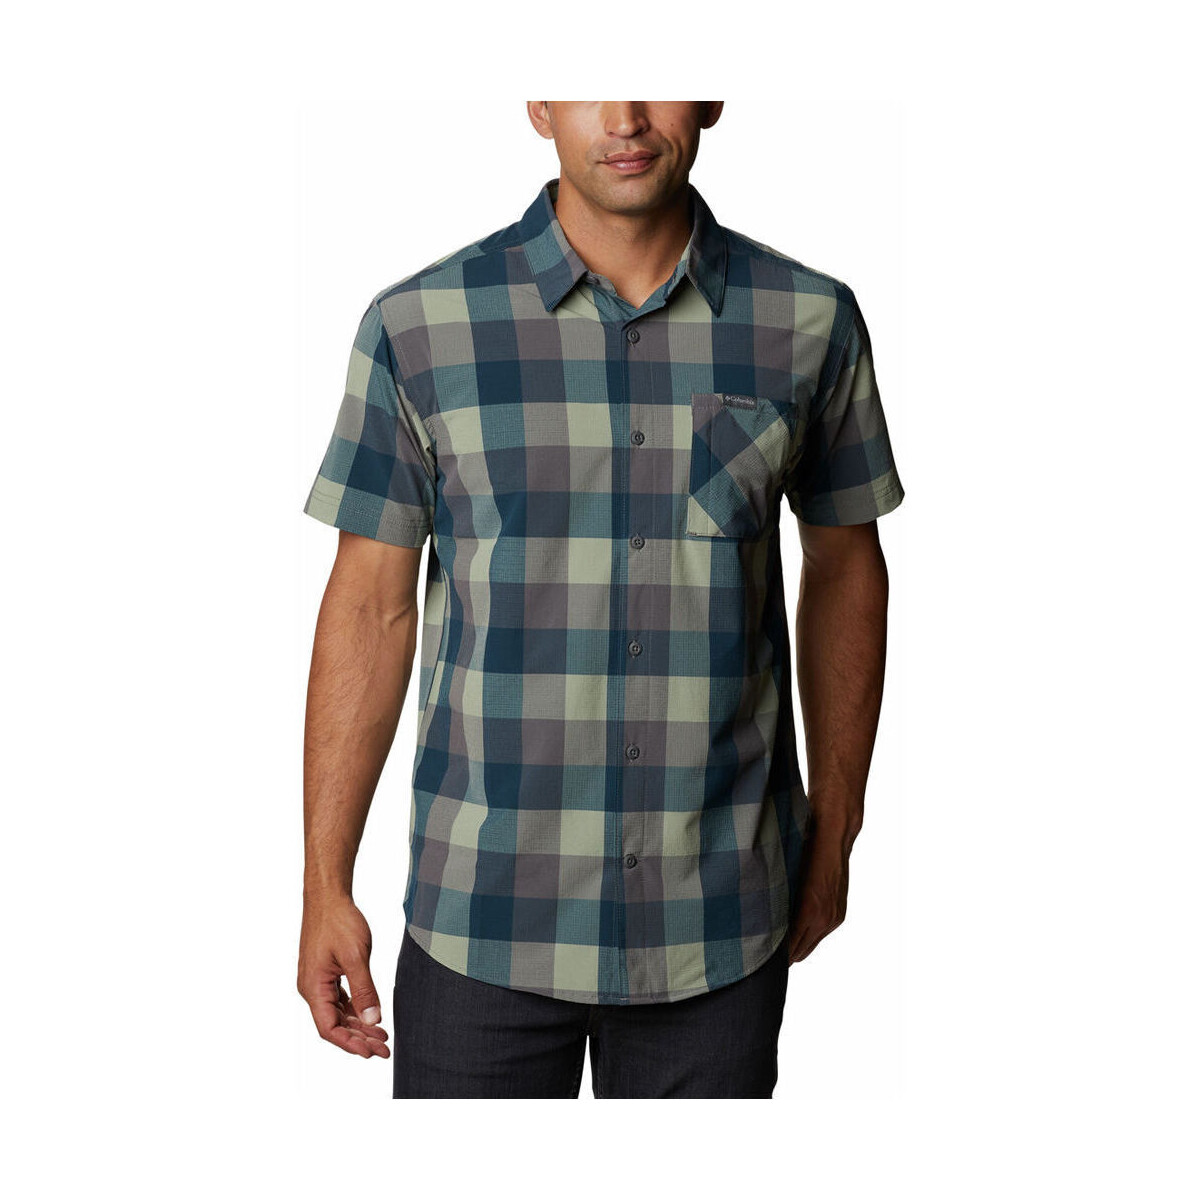 Vêtements Homme Chemises manches courtes Columbia Triple Canyon SS Shirt Bleu